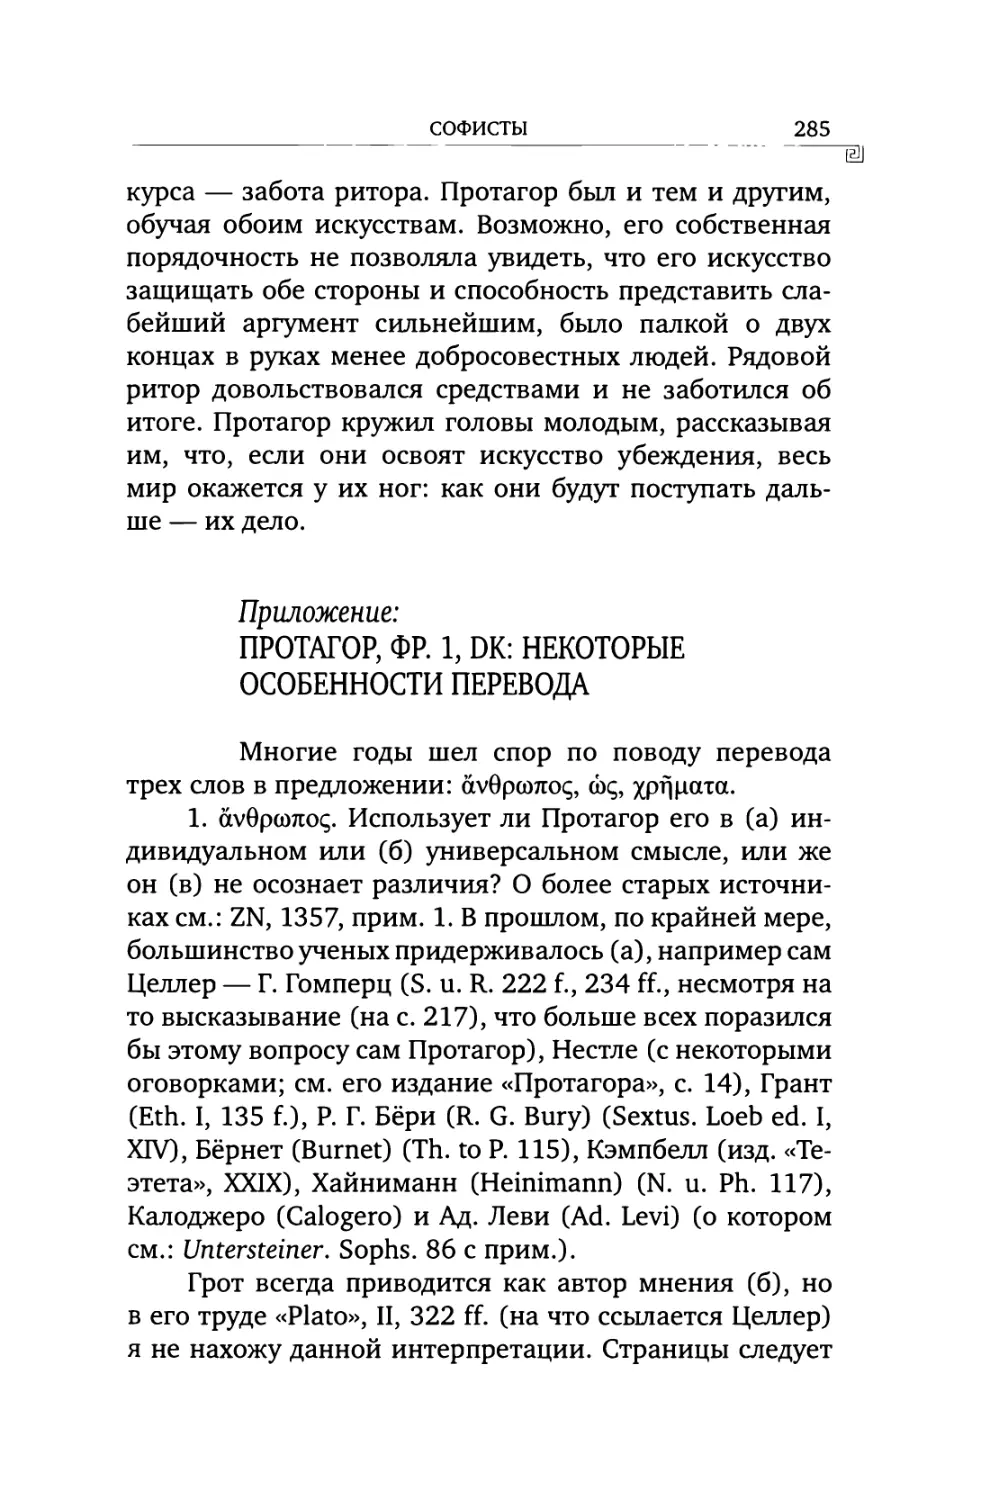 Приложение: Протагор, фр. 1, DK: некоторые особенности перевода